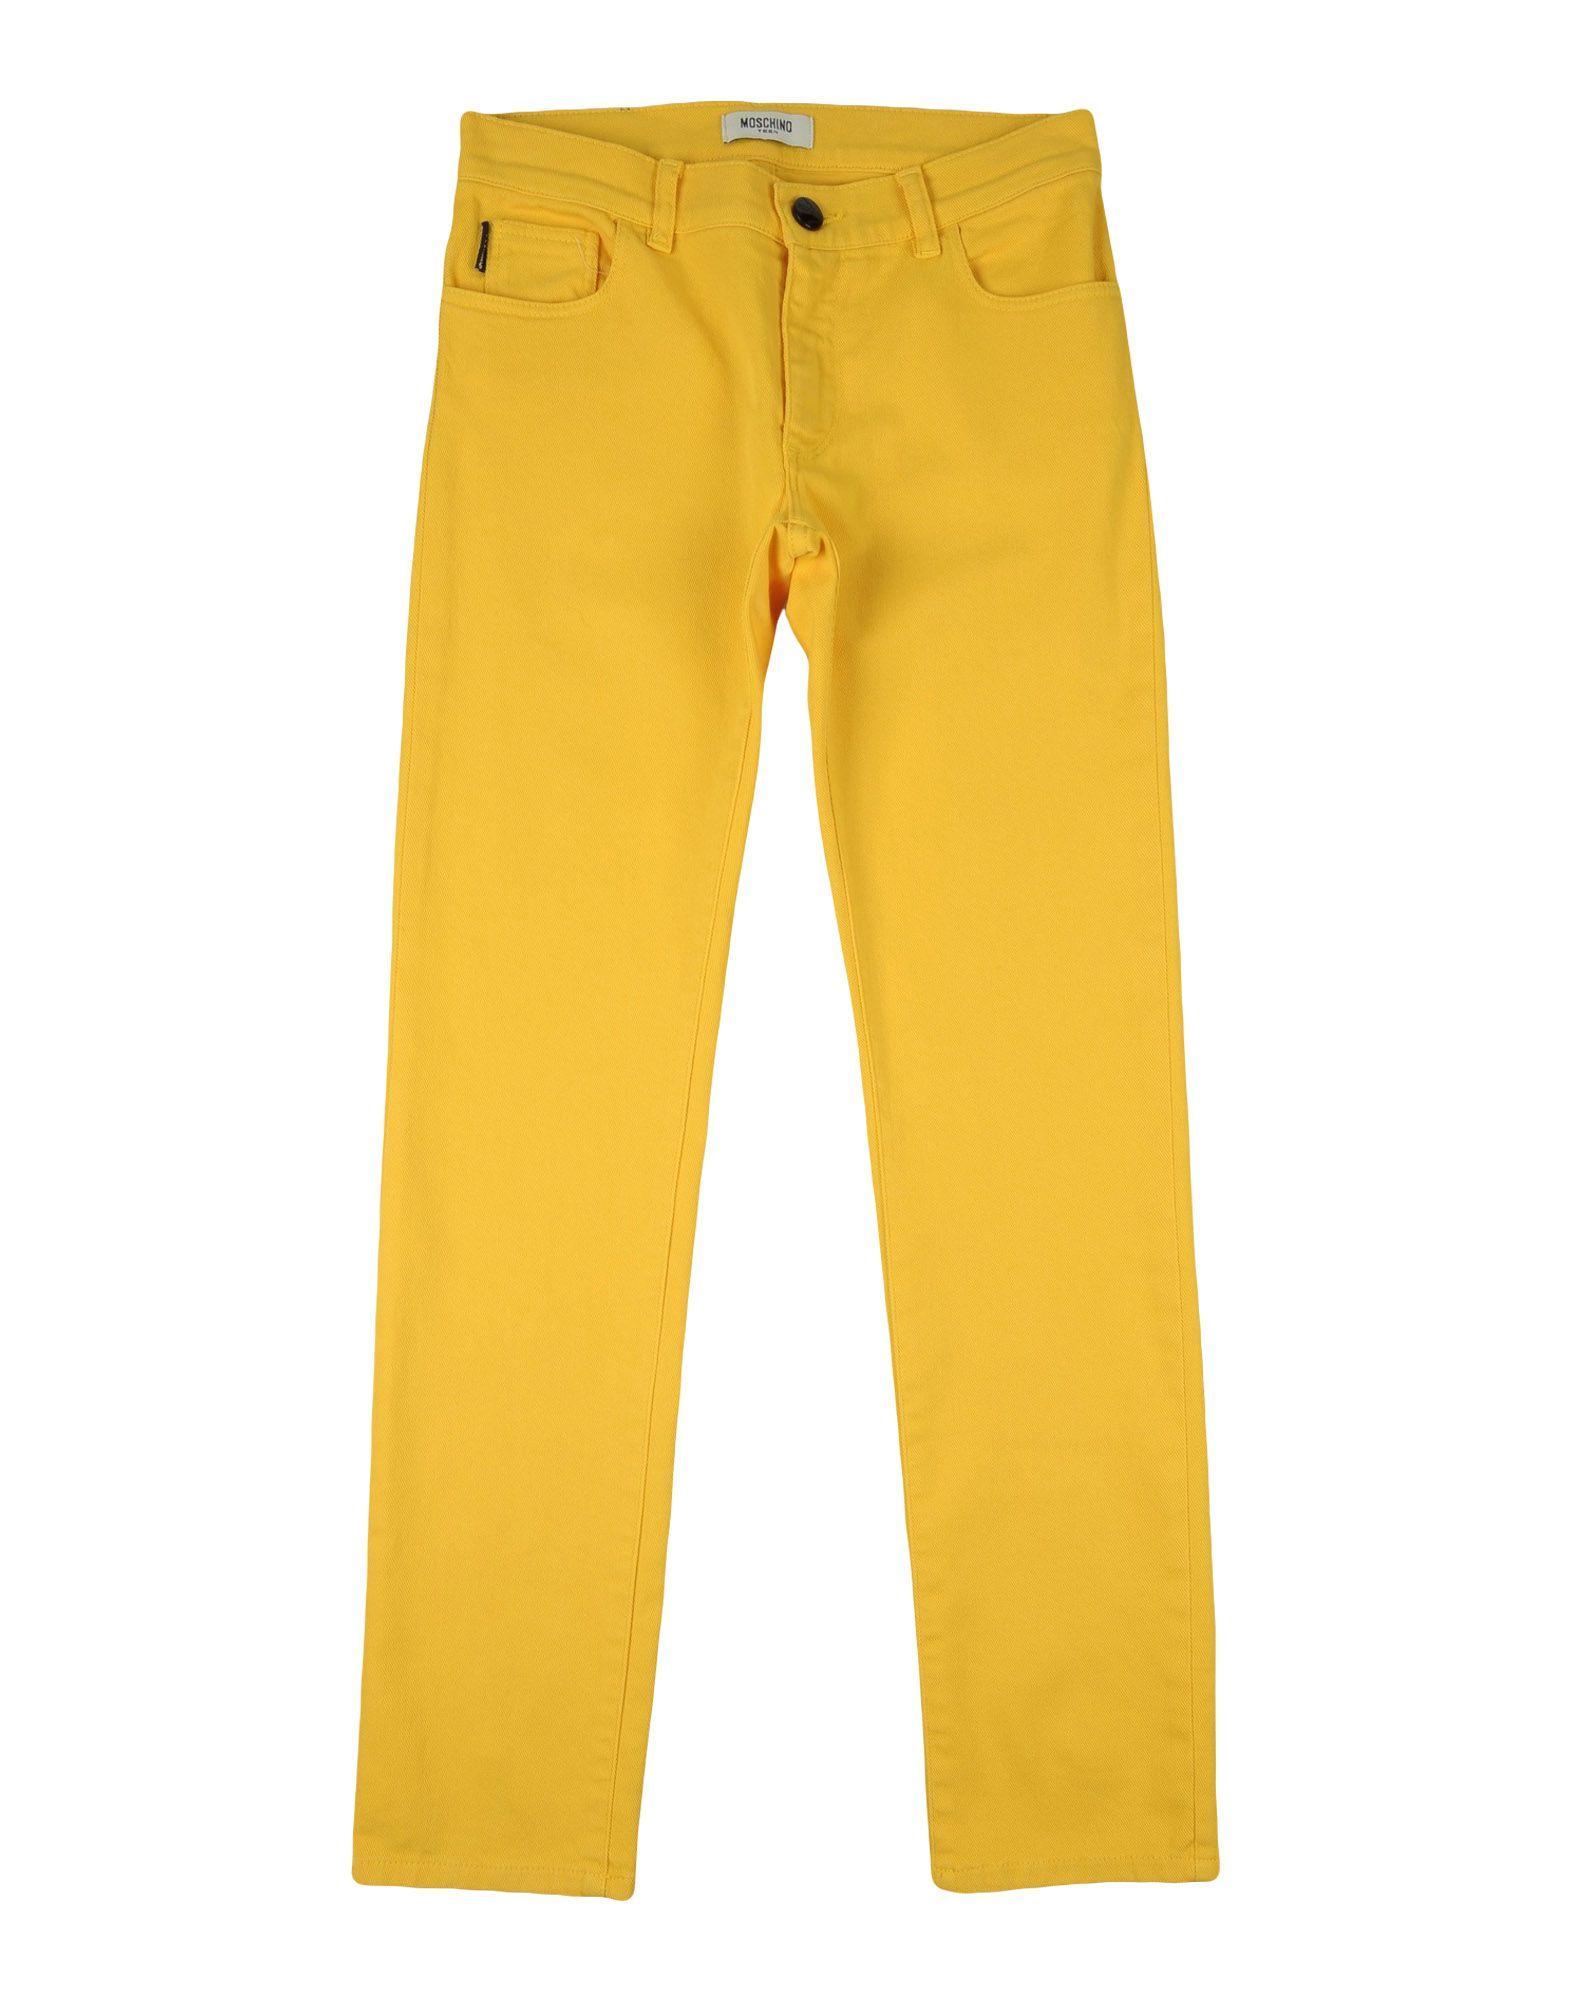 Желтая ли. Желтые брюки Burberry. Брюки Heach Junior. Желтые джинсы. Брюки желтые детские.